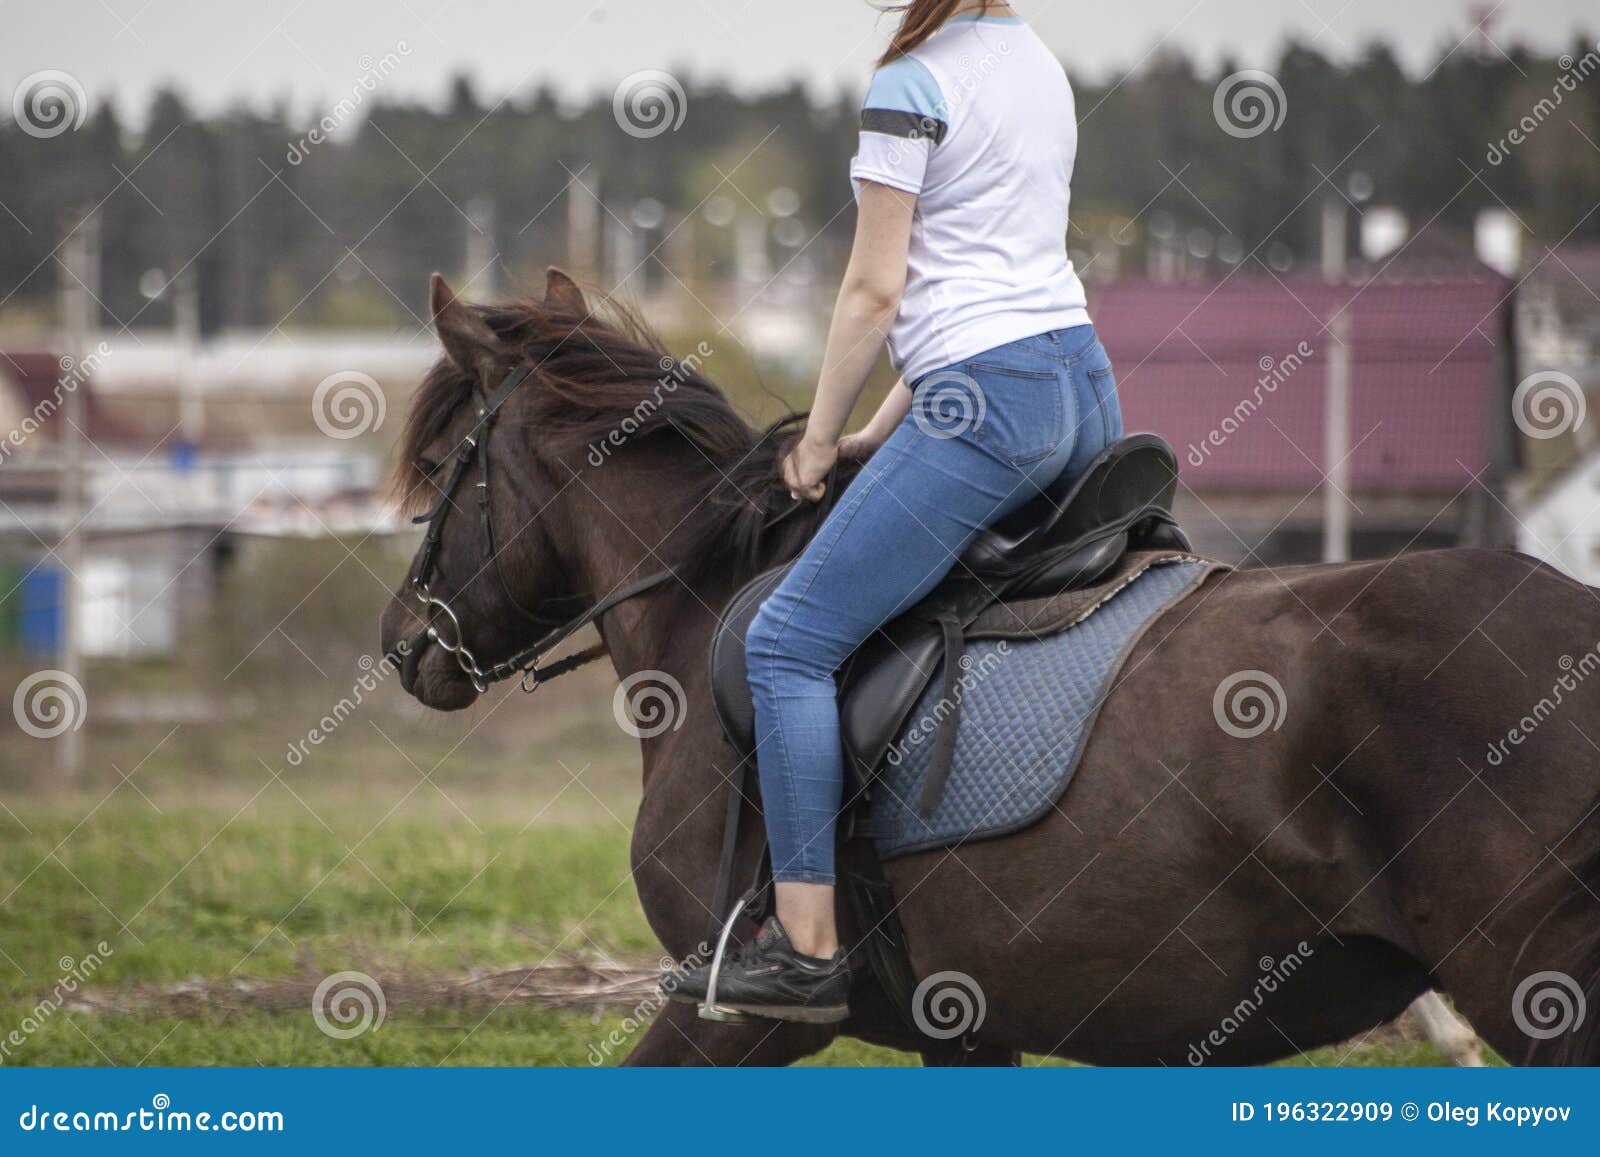 La fille monte à cheval image stock éditorial. Image du grand